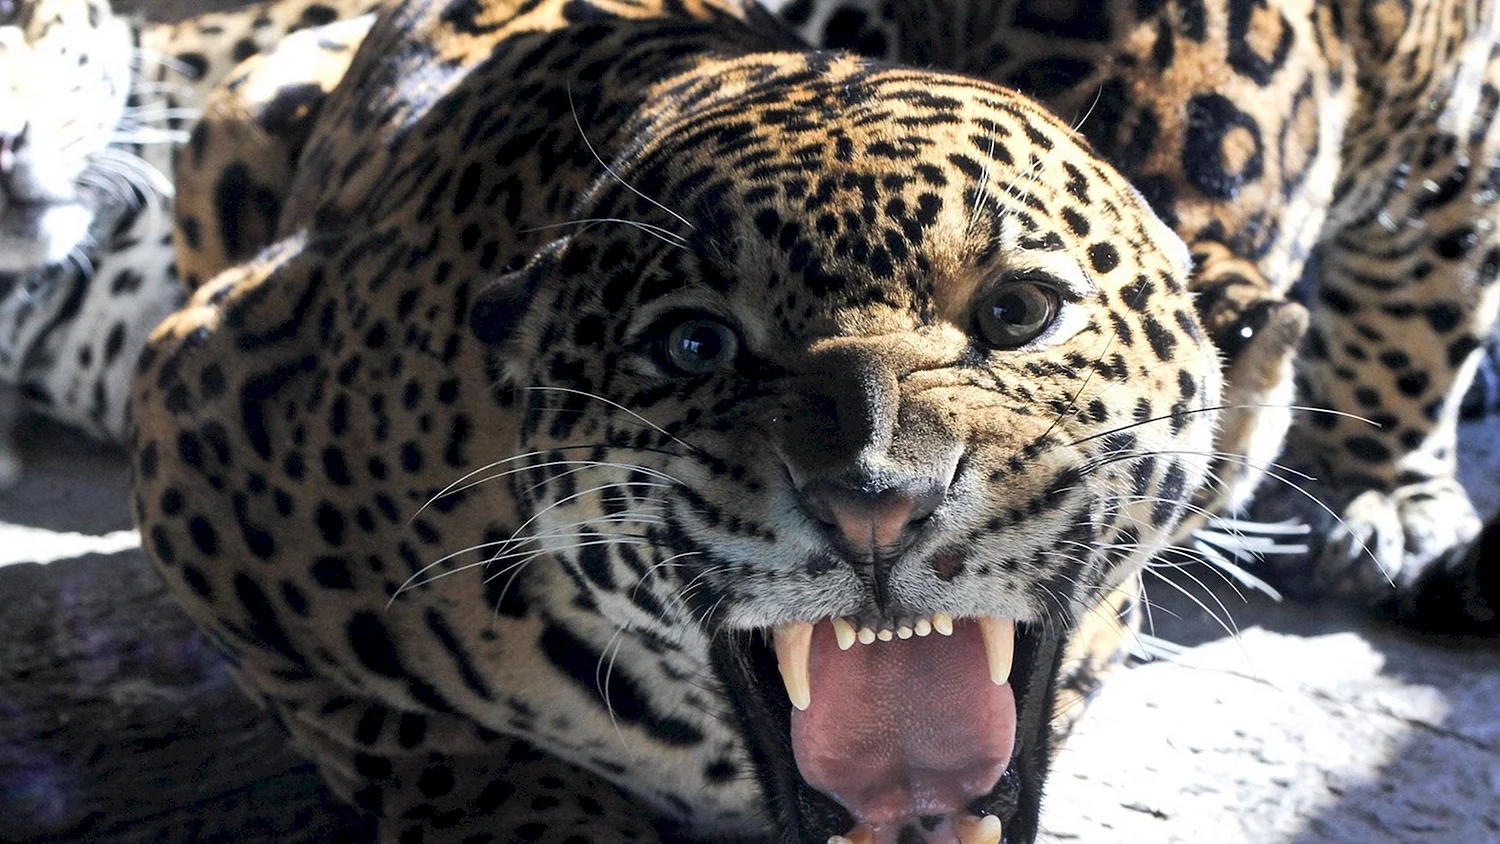 Леопард Оцелот Ягуар